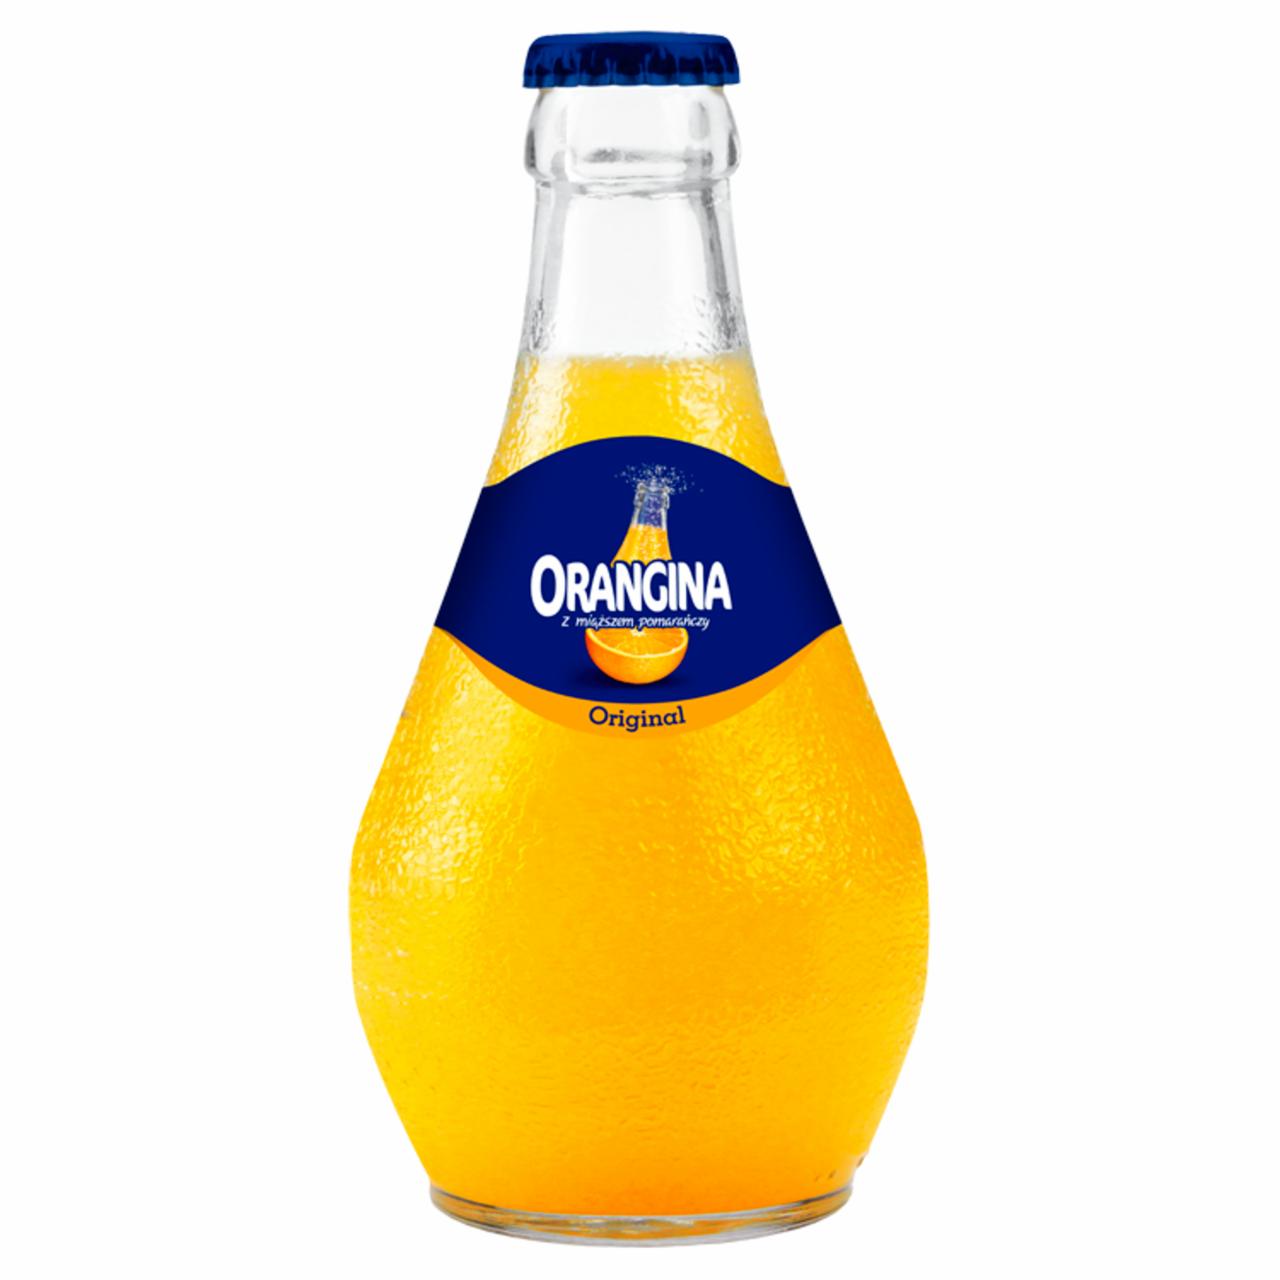 Zdjęcia - Orangina Original Napój gazowany o smaku pomarańczowym 0,25 l